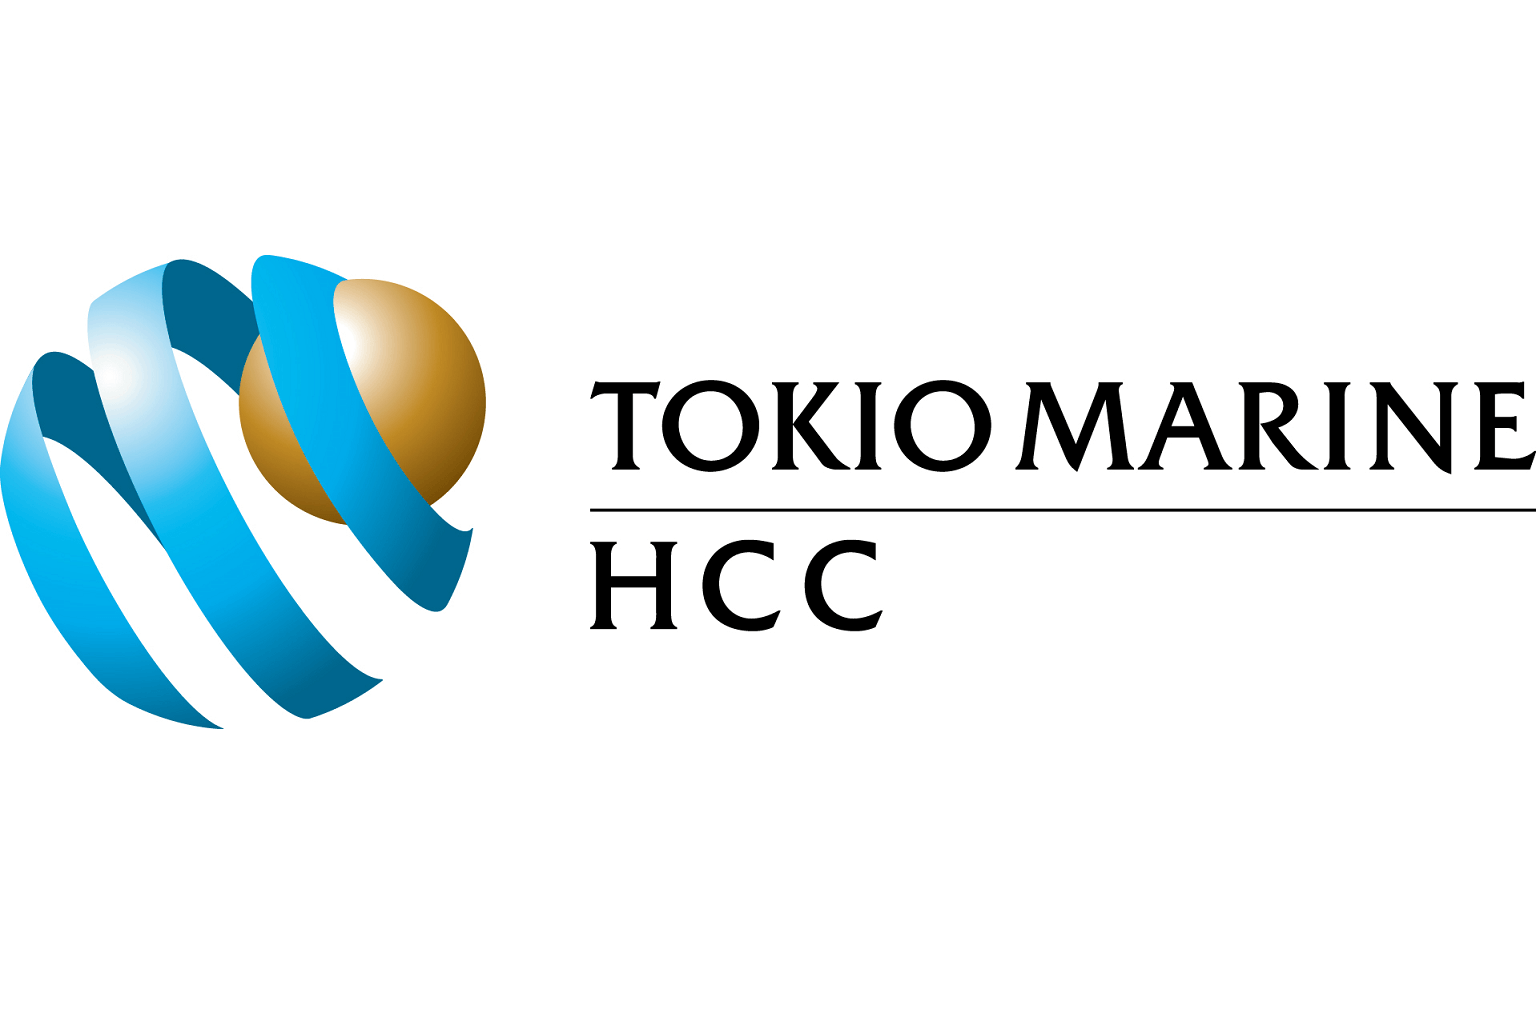 TOYOTA_logo